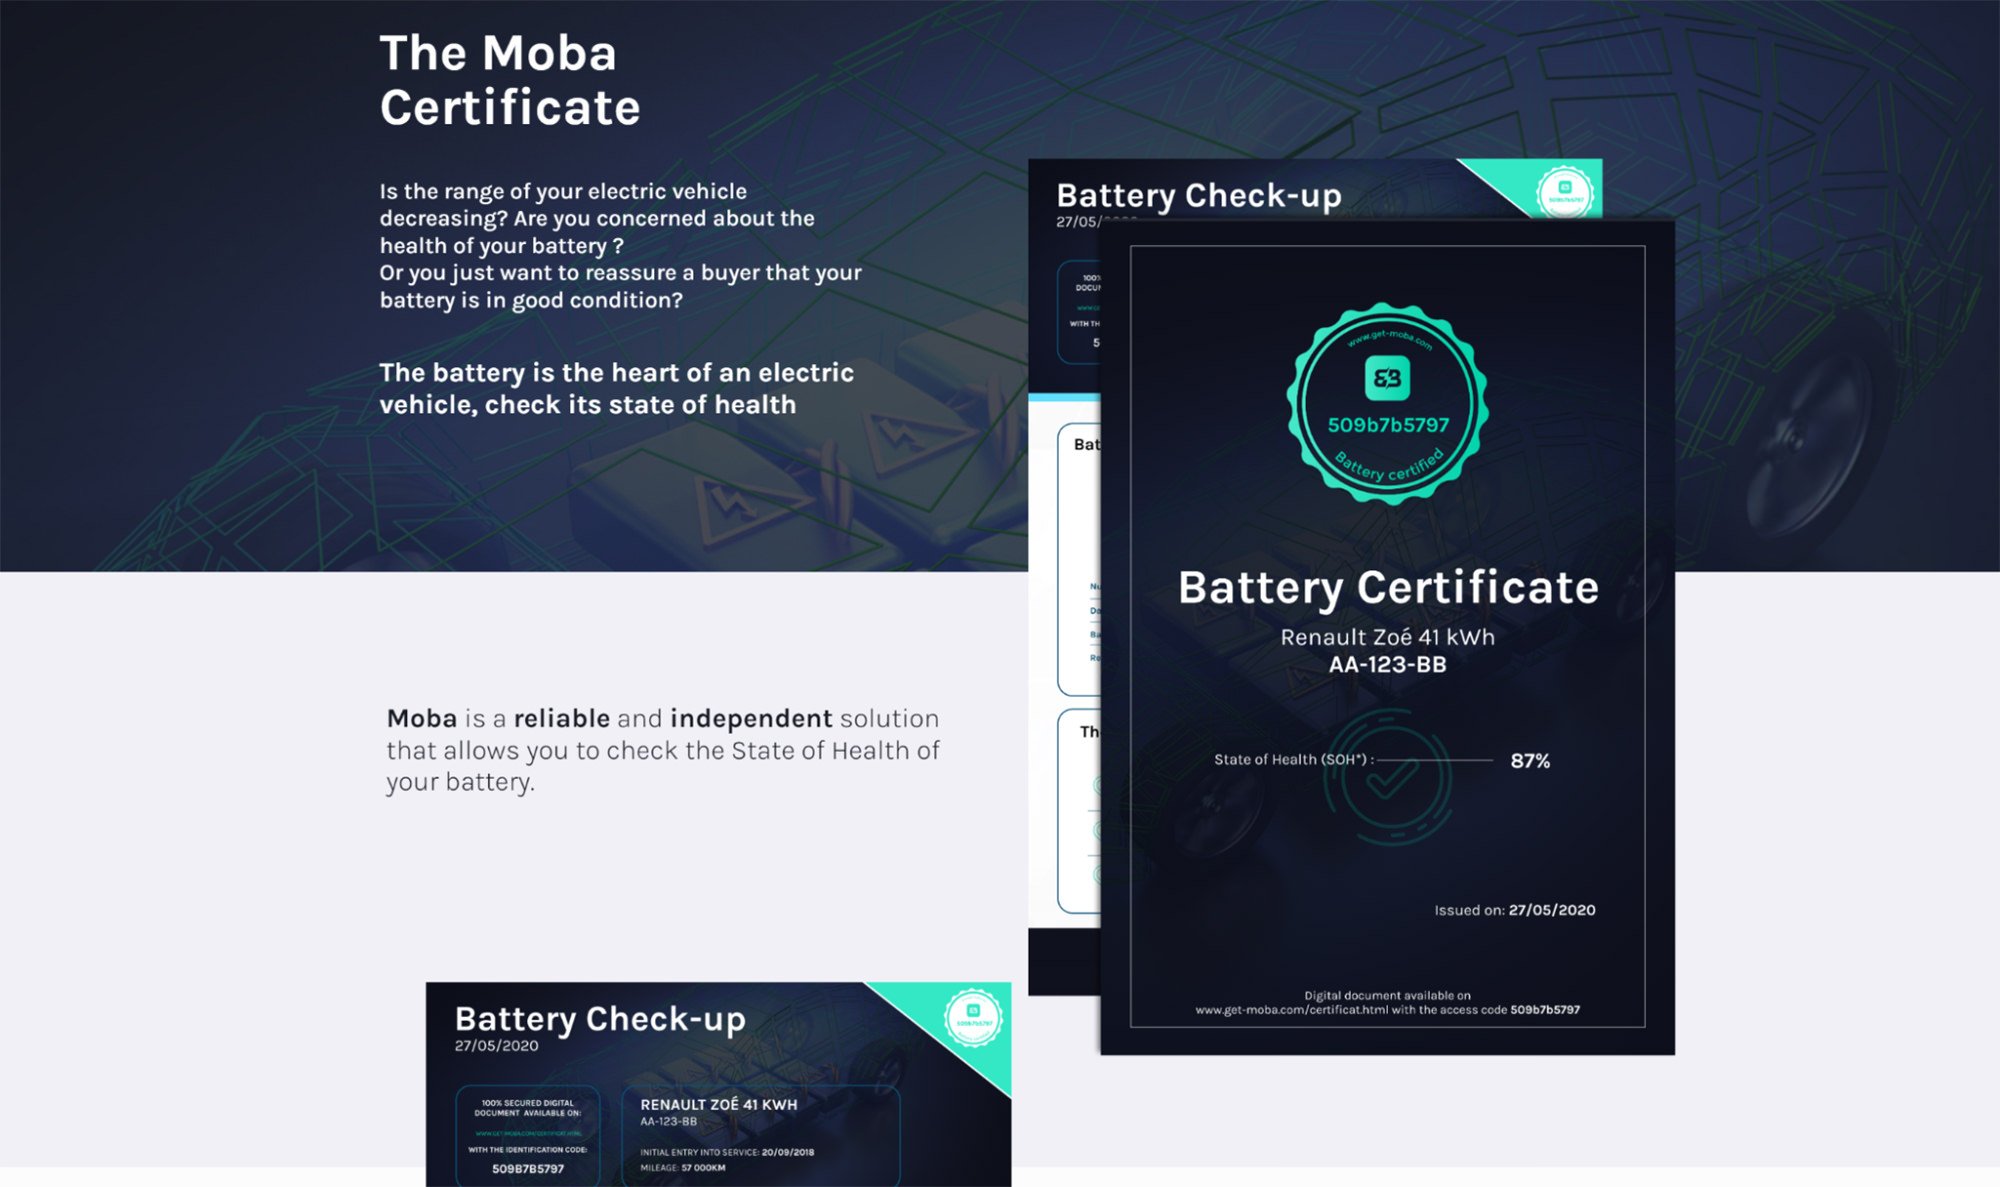 сертификат moba для подтверждения работоспособности батареи